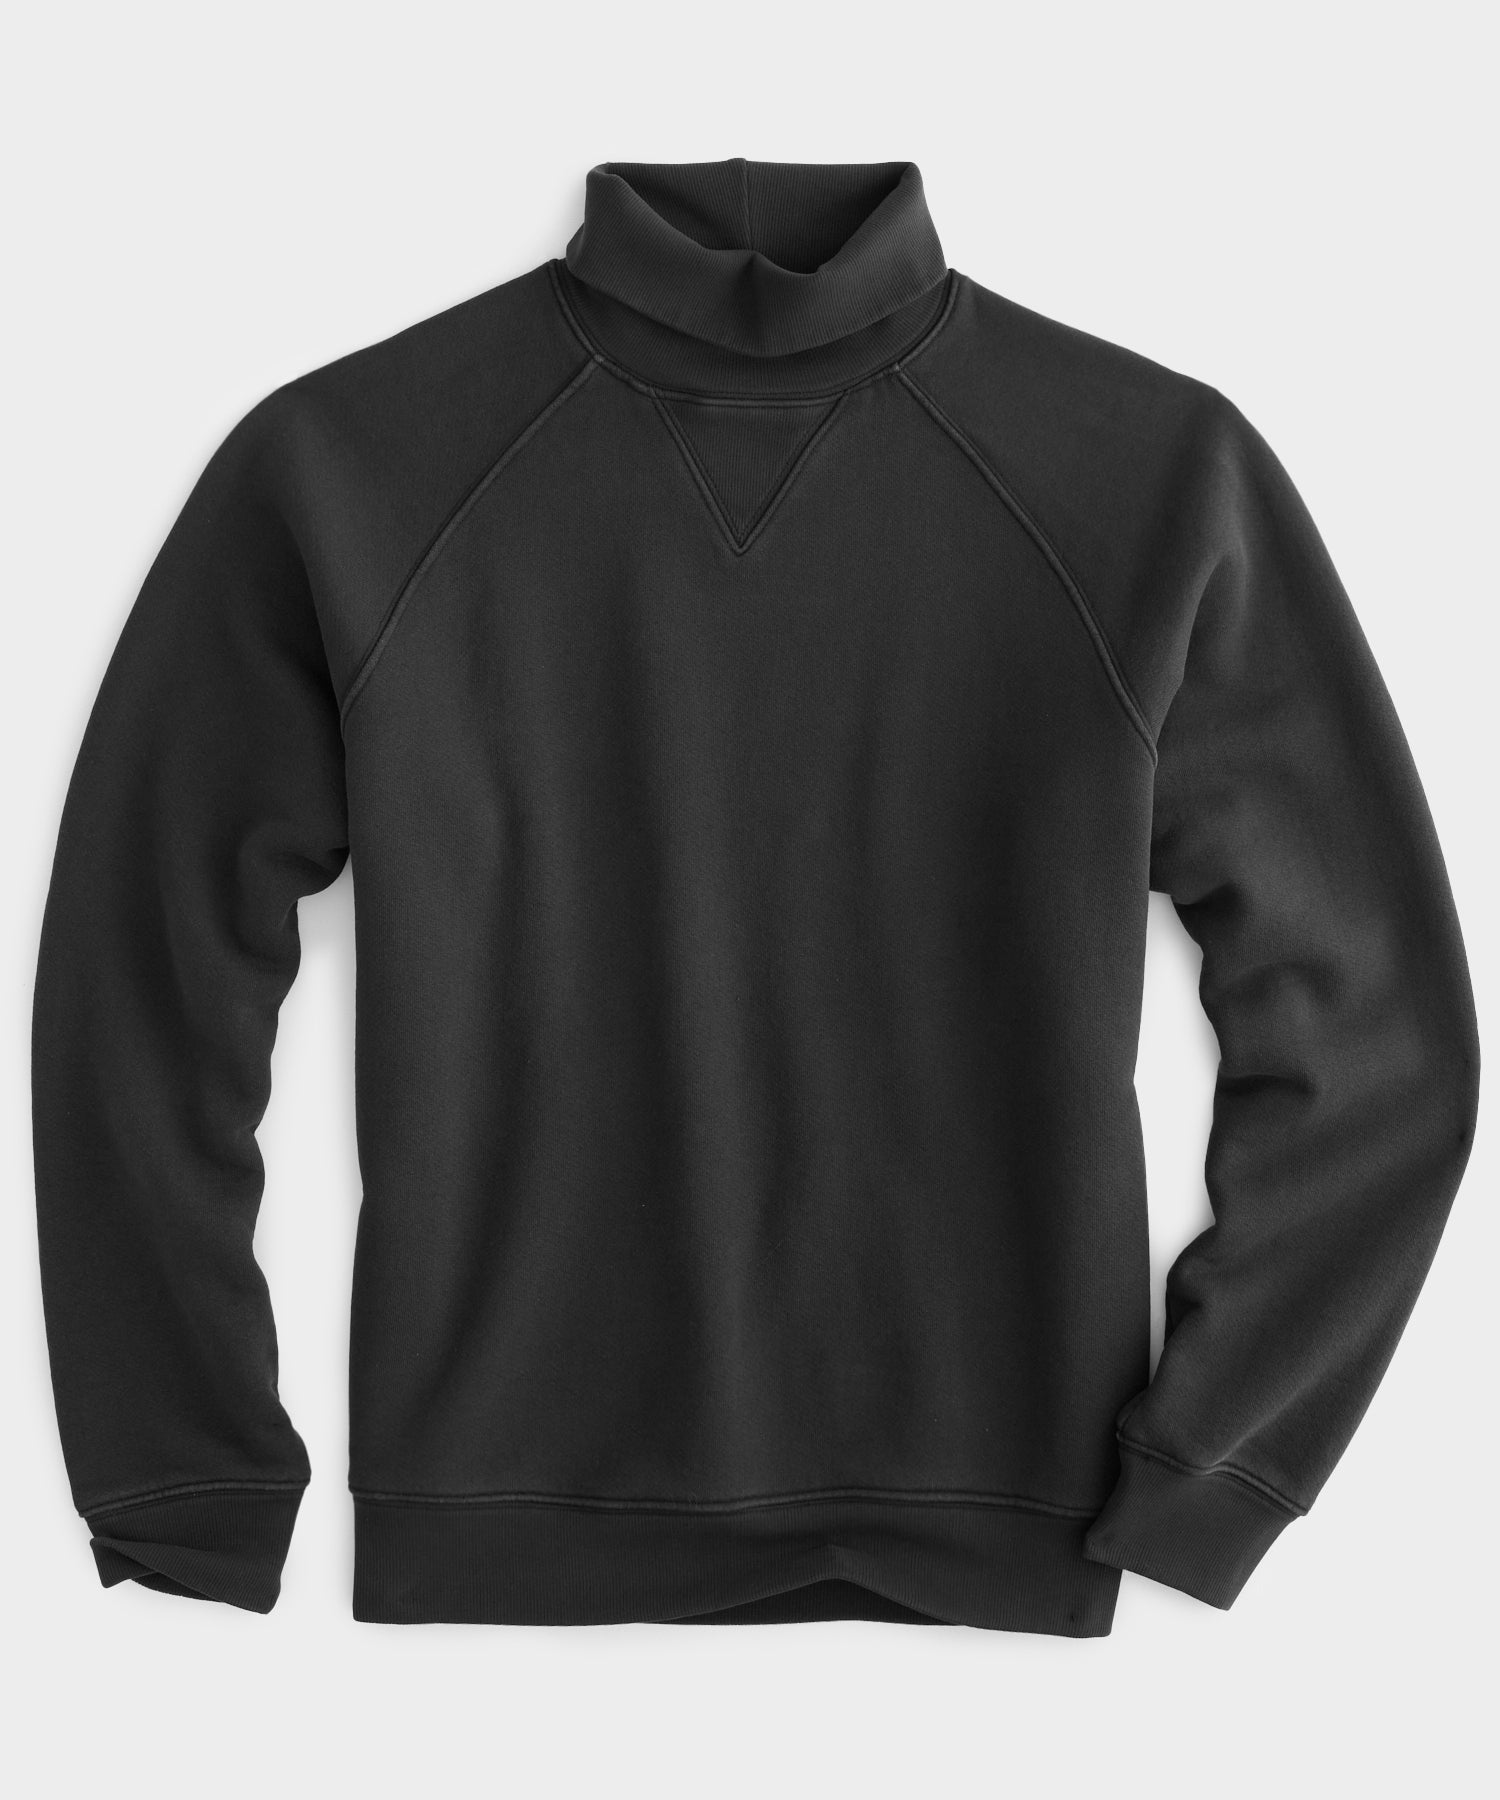 Made in L.A. Fleece Turtleneck Sweatshirt in Faded Black